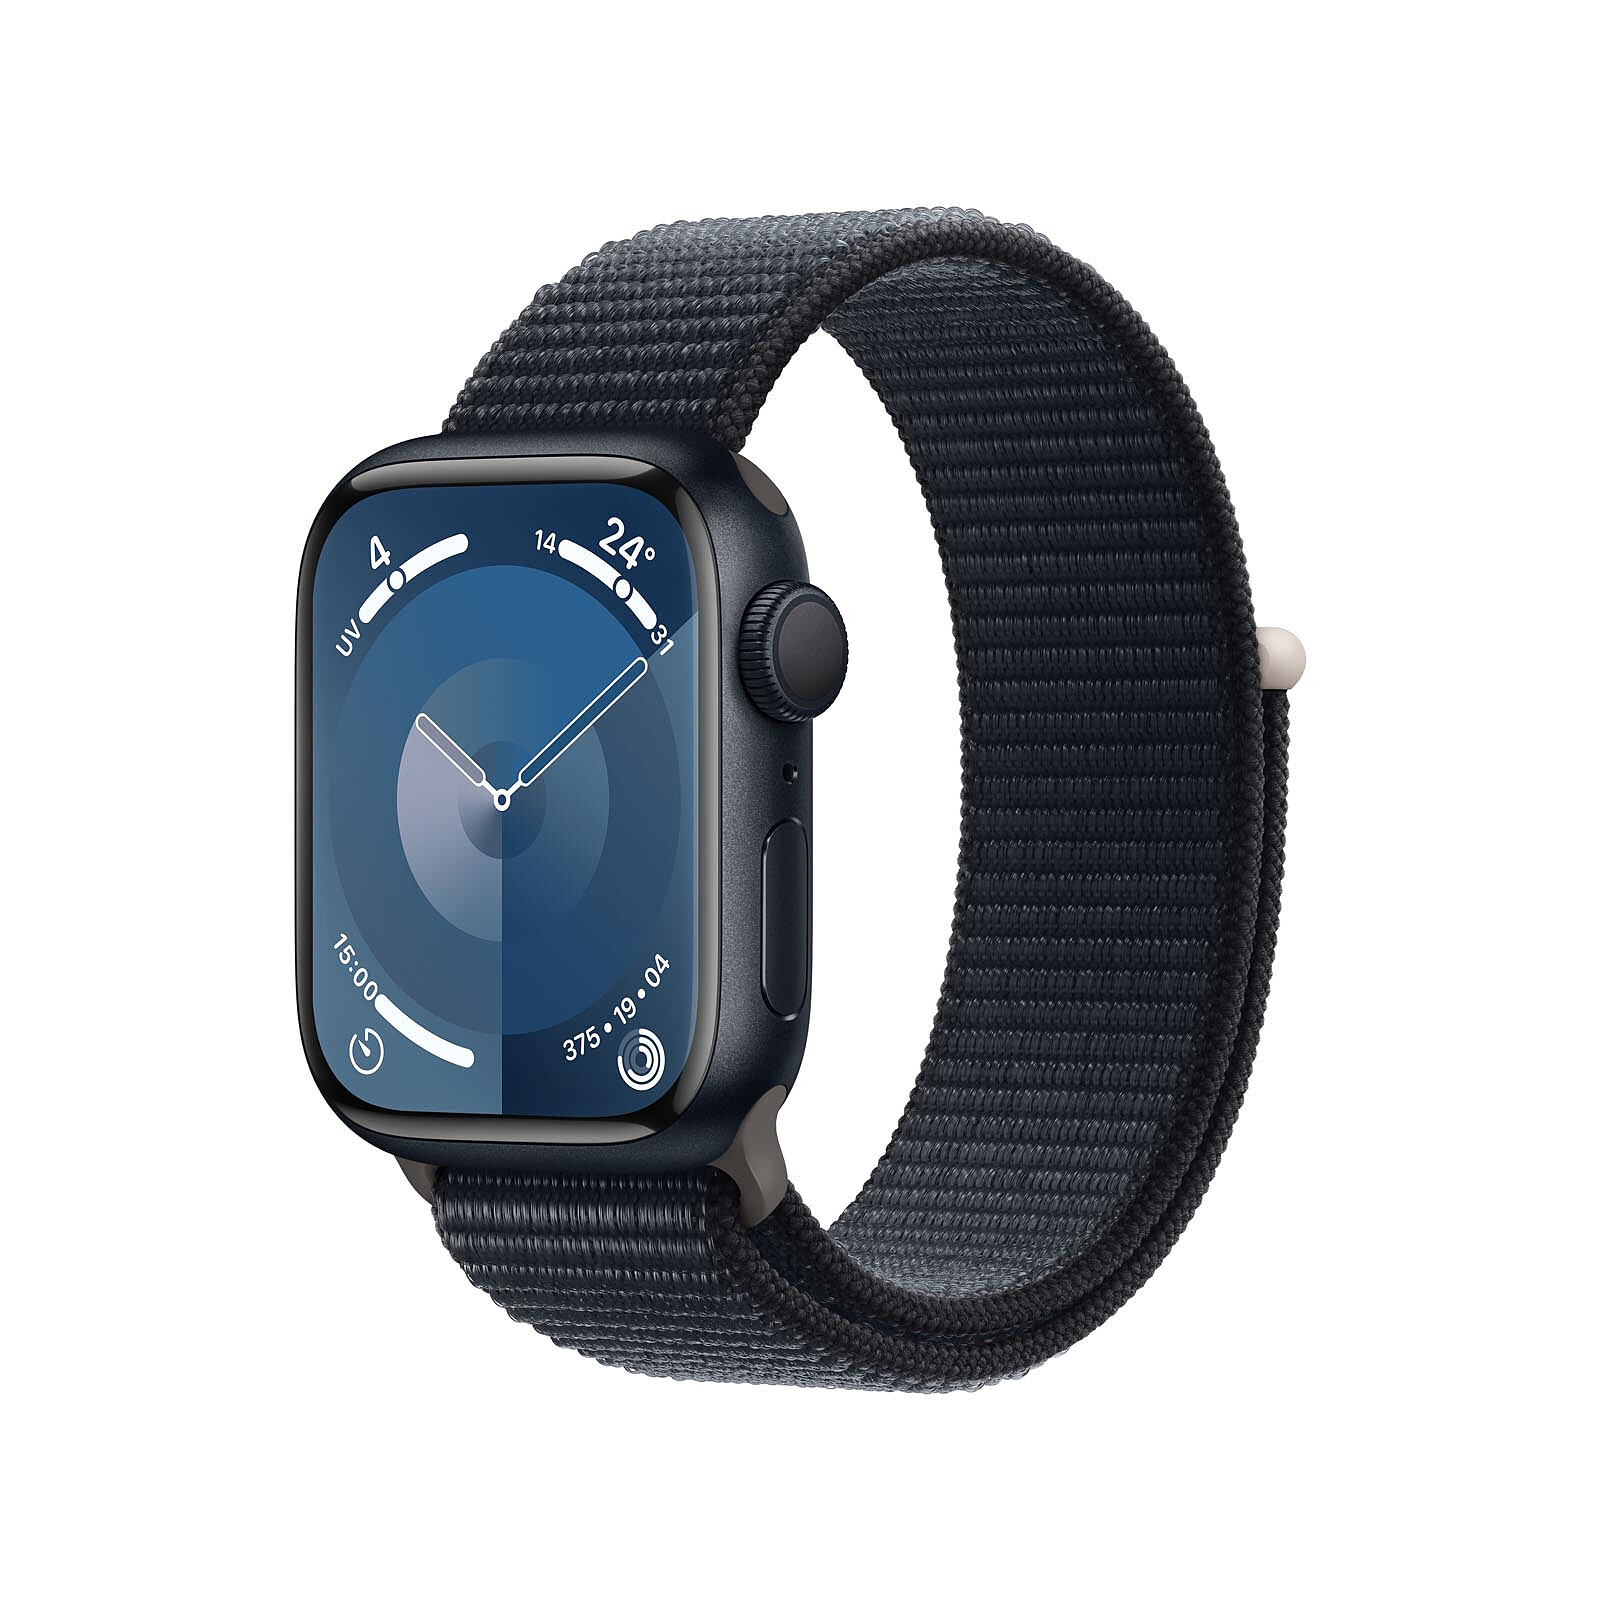 Apple Watch Series 9, características, precio y ficha técnica